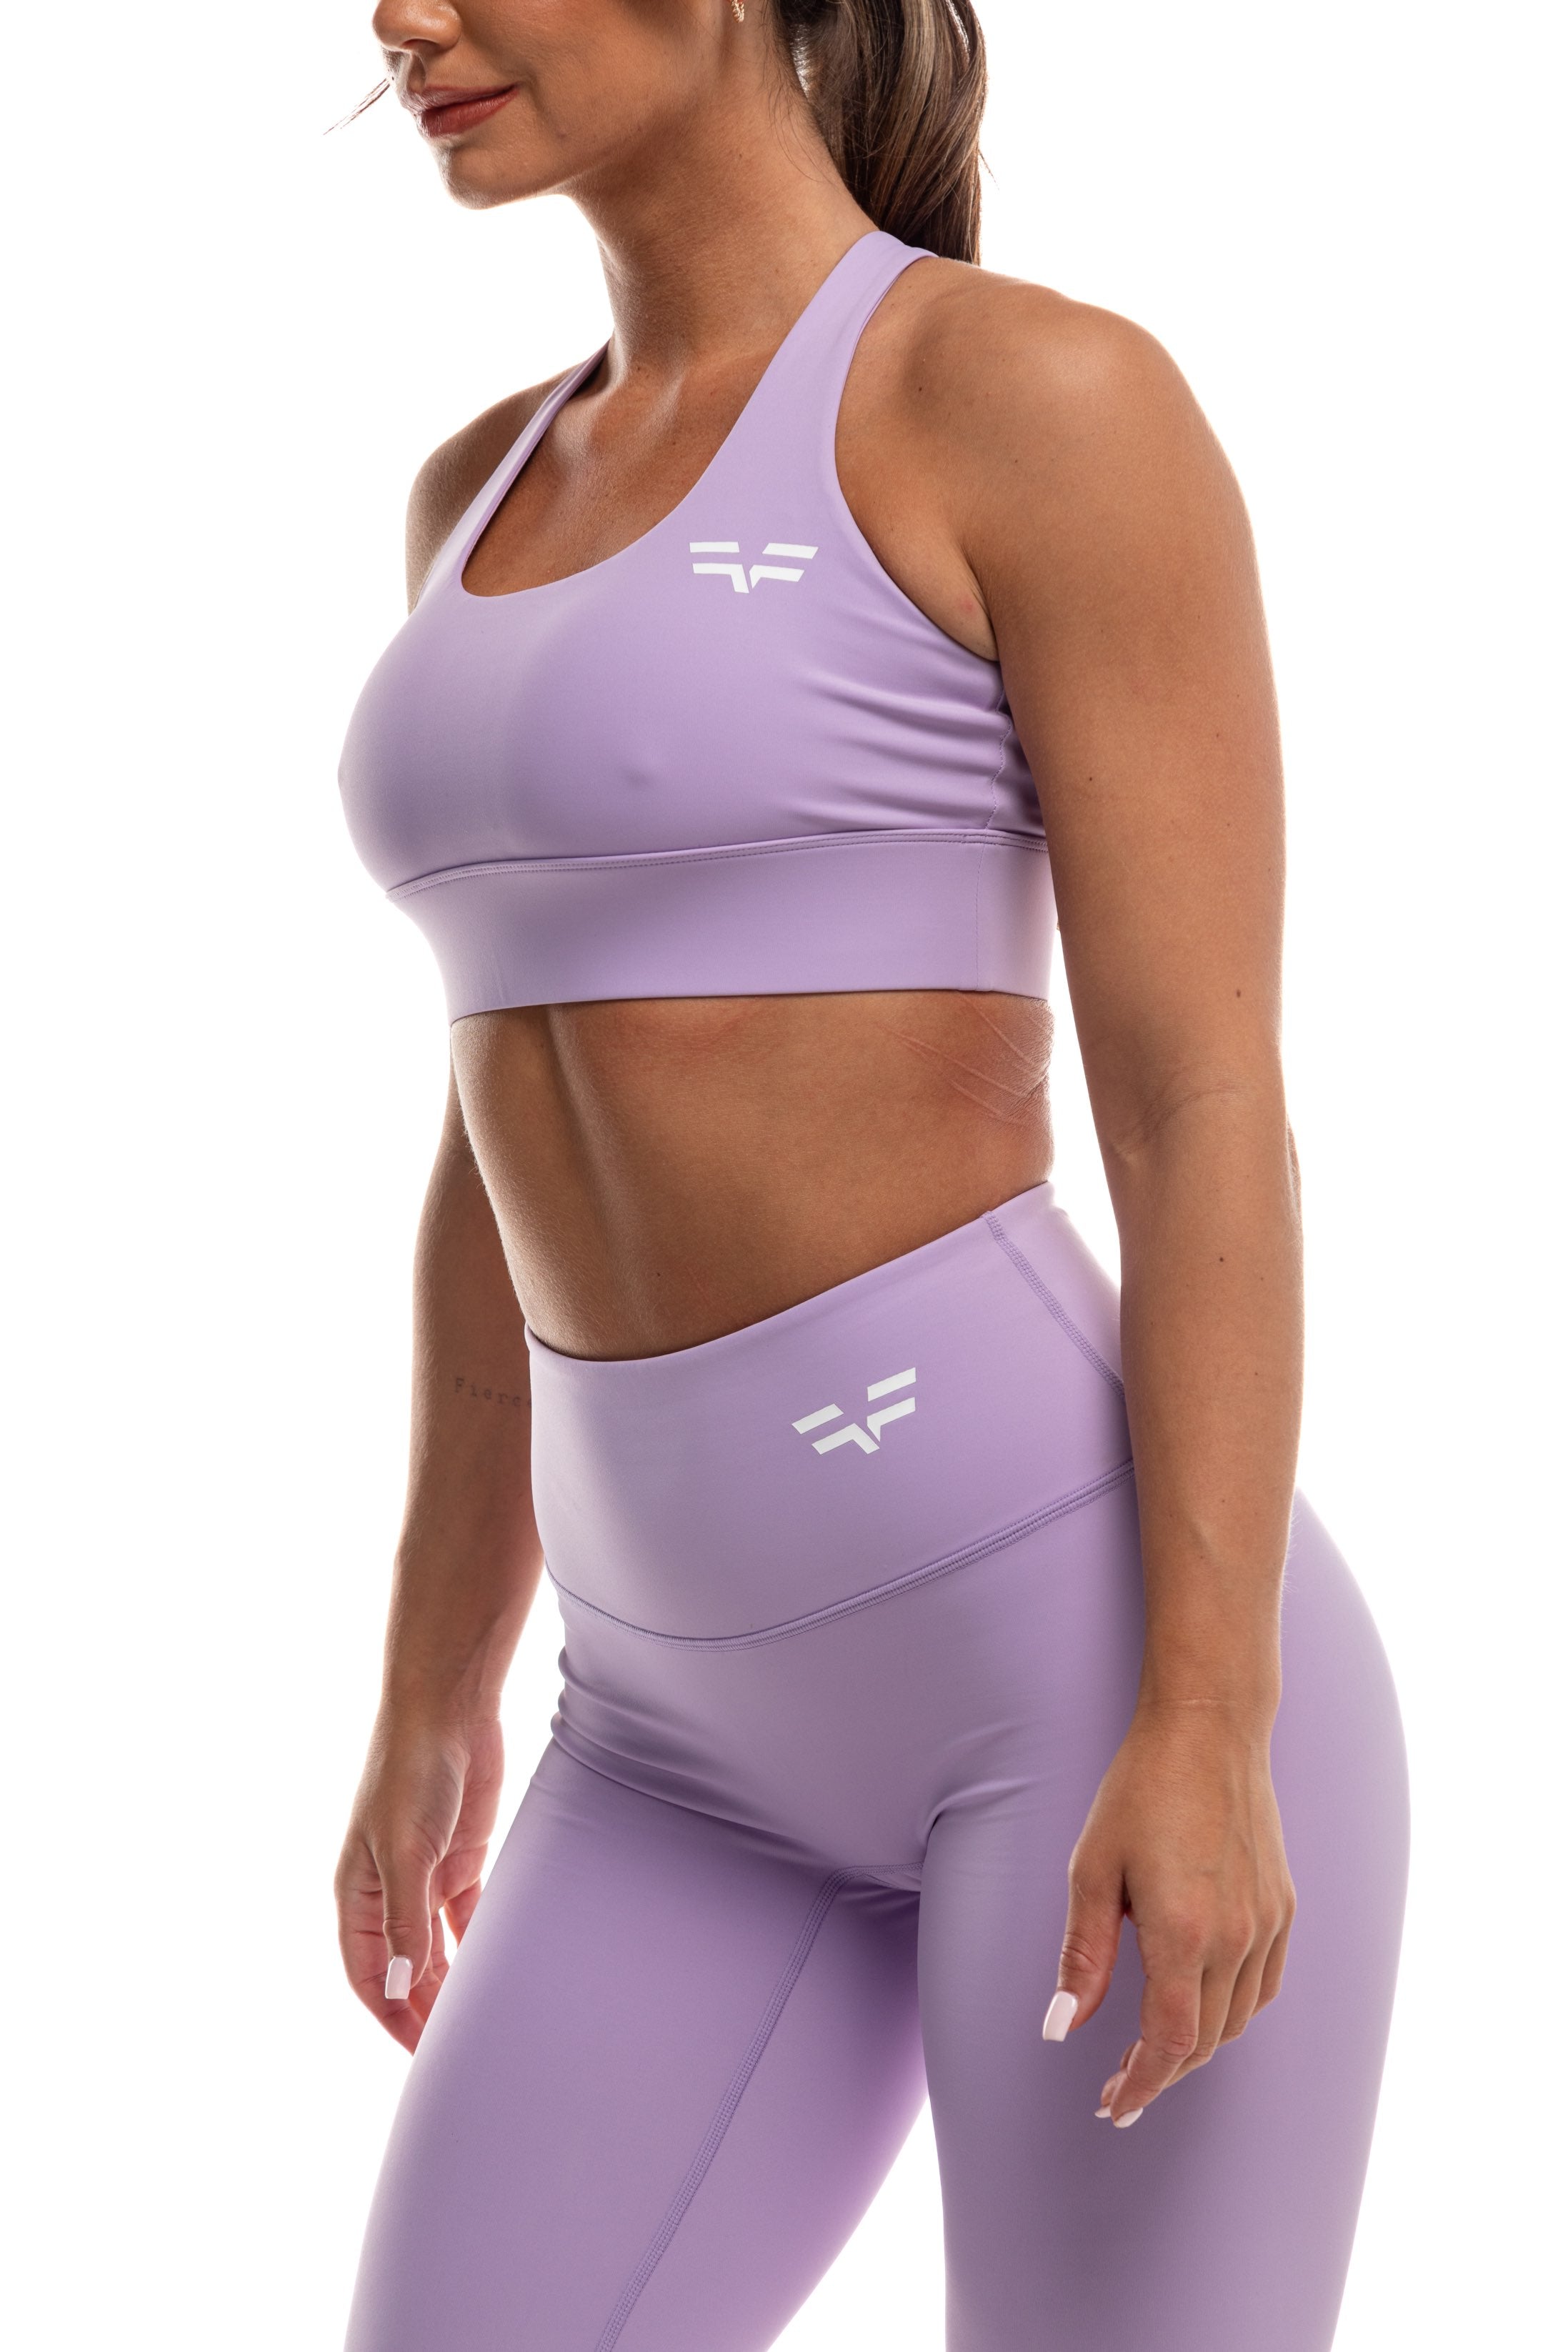 GymFreak Women's Vision Bra - Purple